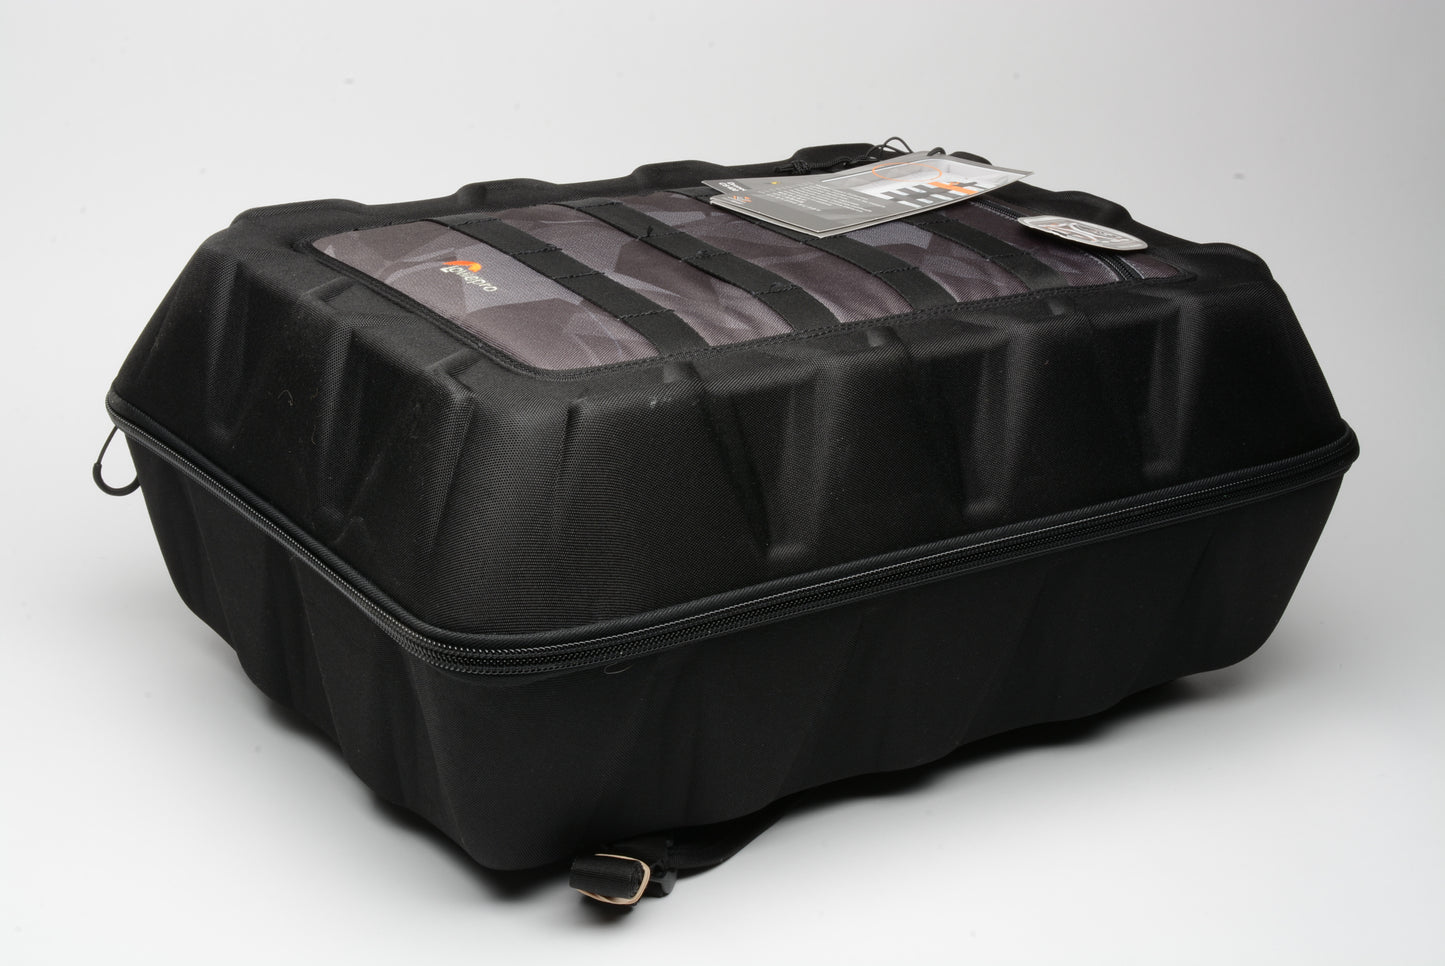 Lowepro DroneGurad CS400 (Black) case, Never used (light shelf wear)